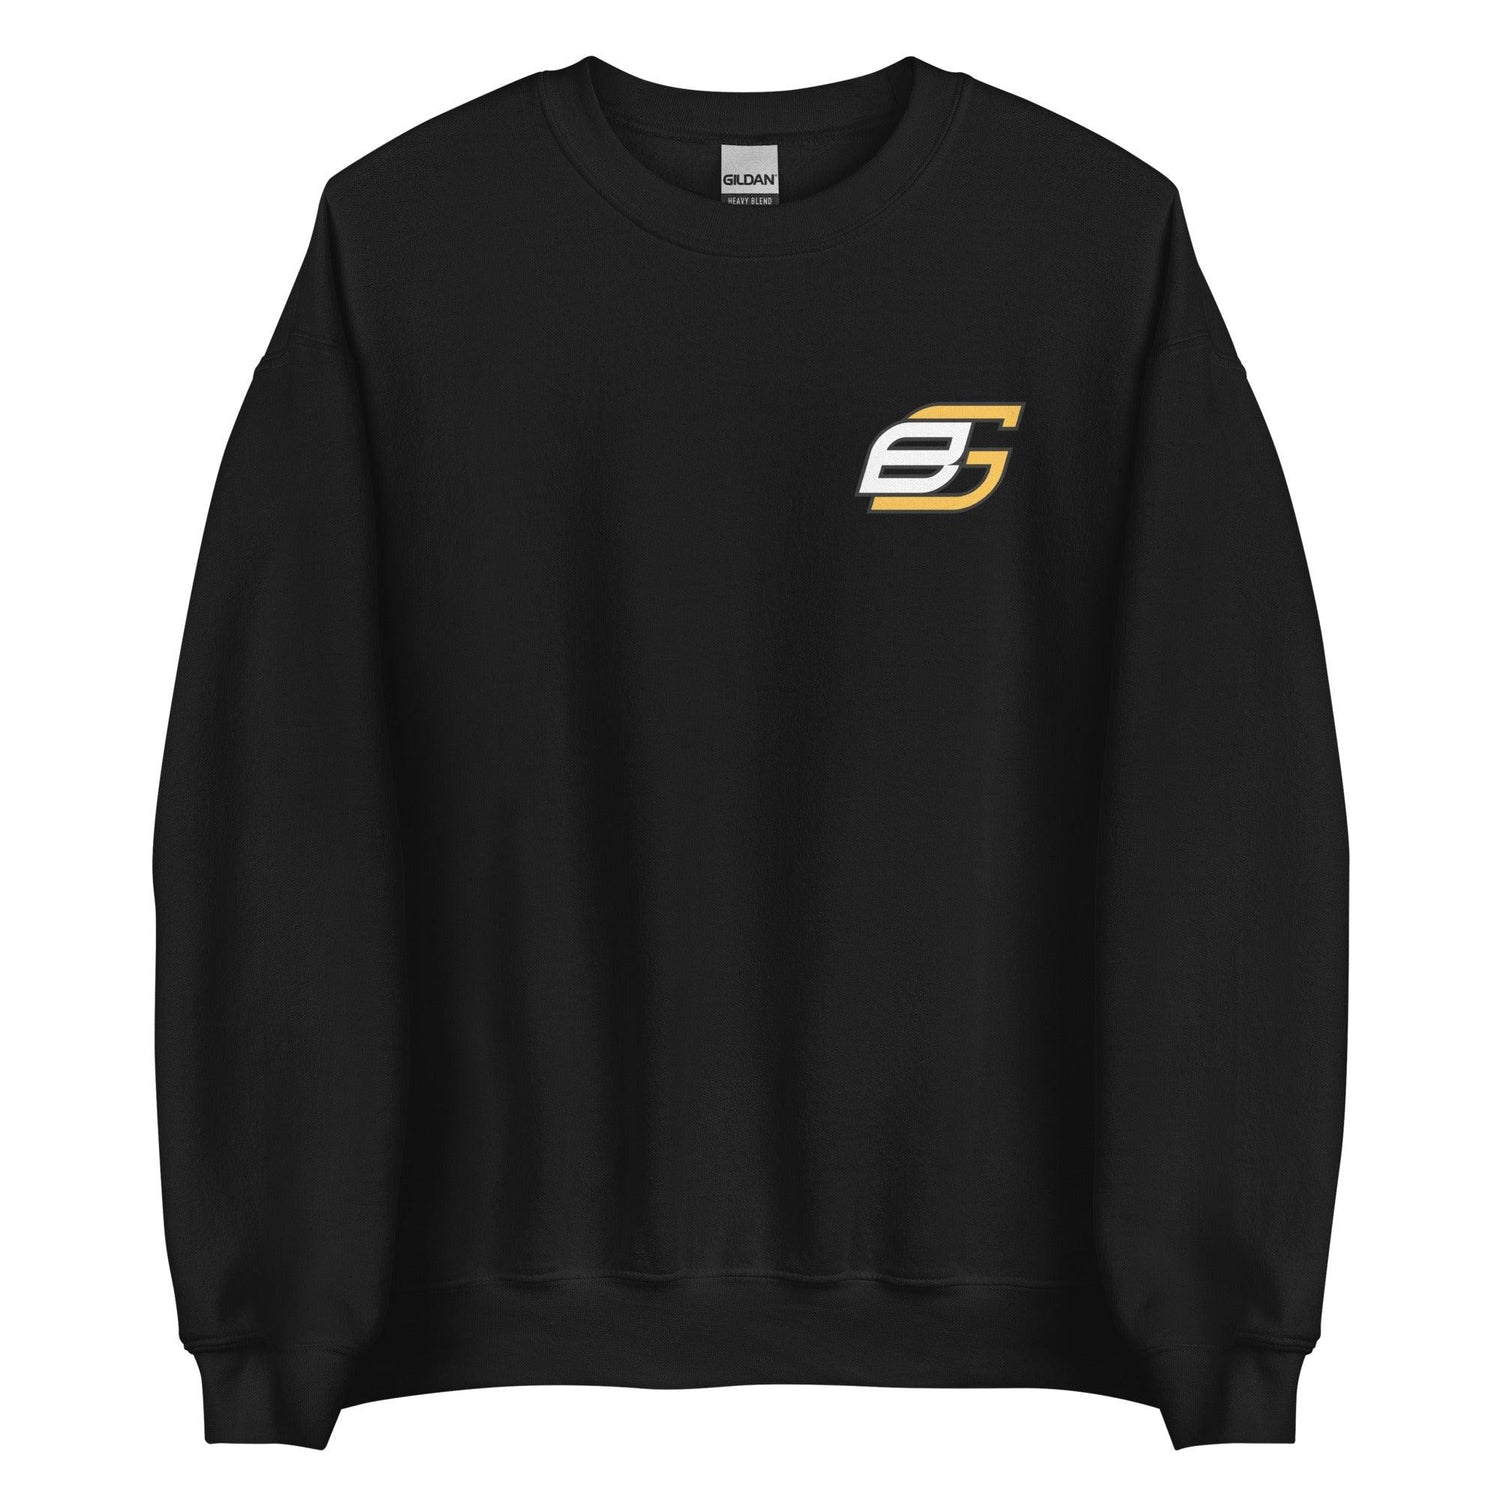 Ben Gamel "Elite" Sweatshirt - Fan Arch